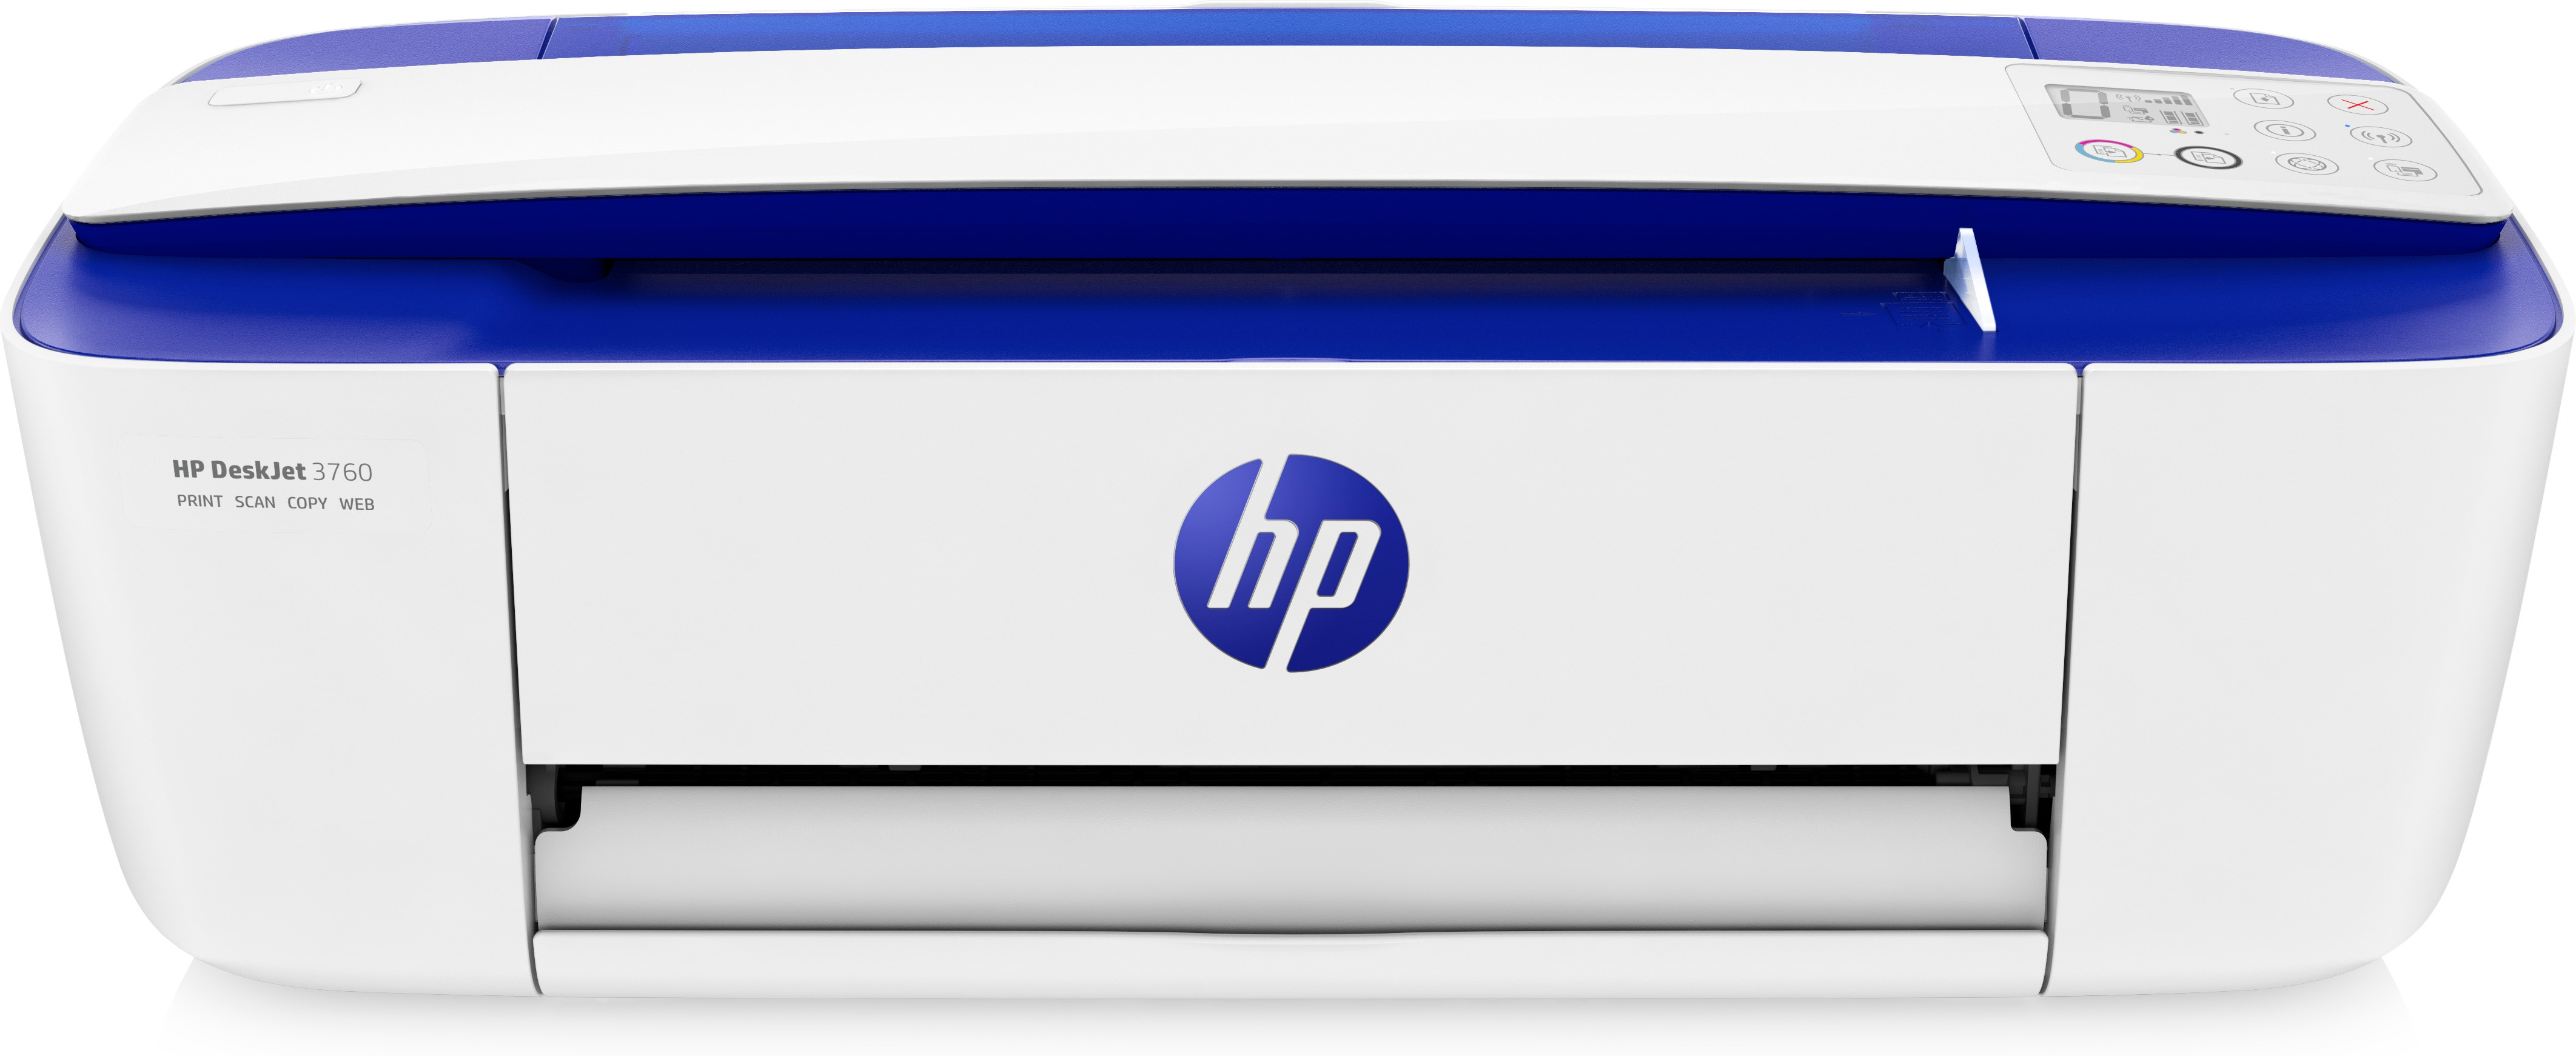 Stampante multifunzione HP DeskJet 3760 wireless, a casa come in ufficio  per stampare, scansionare e copiare a colori